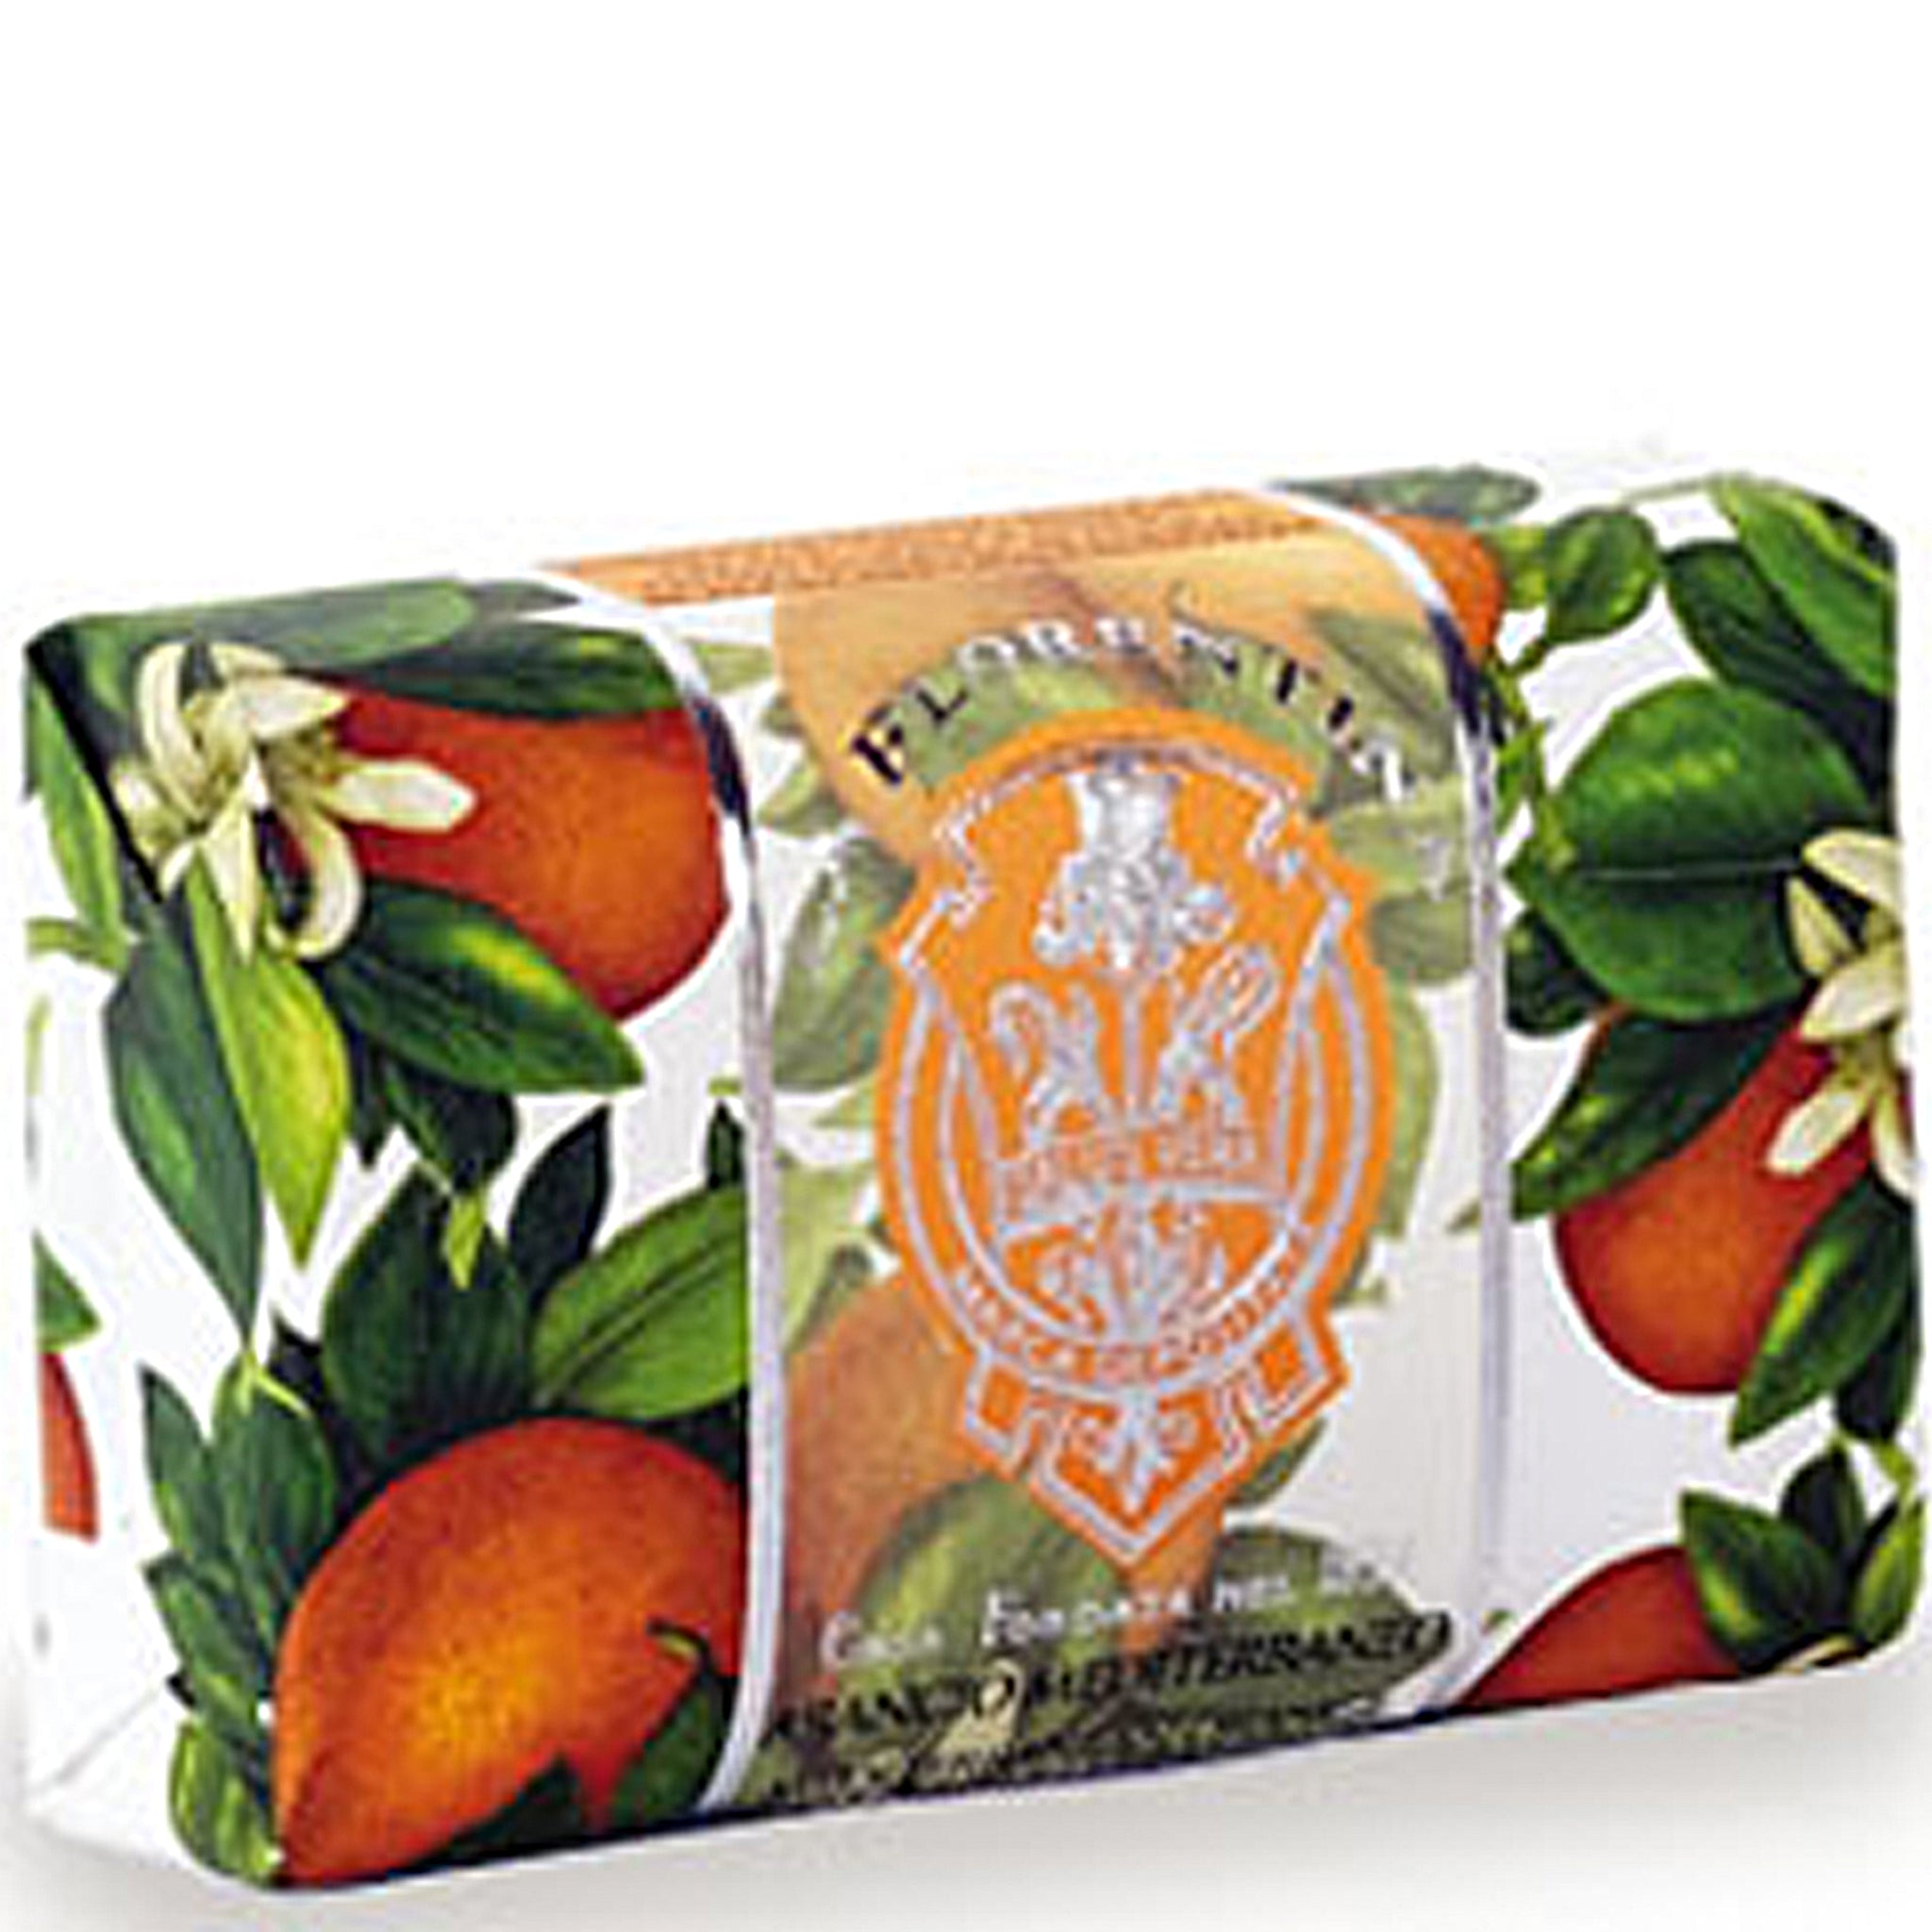 La Florentina Mediterranean Orange 200g Bar Soap